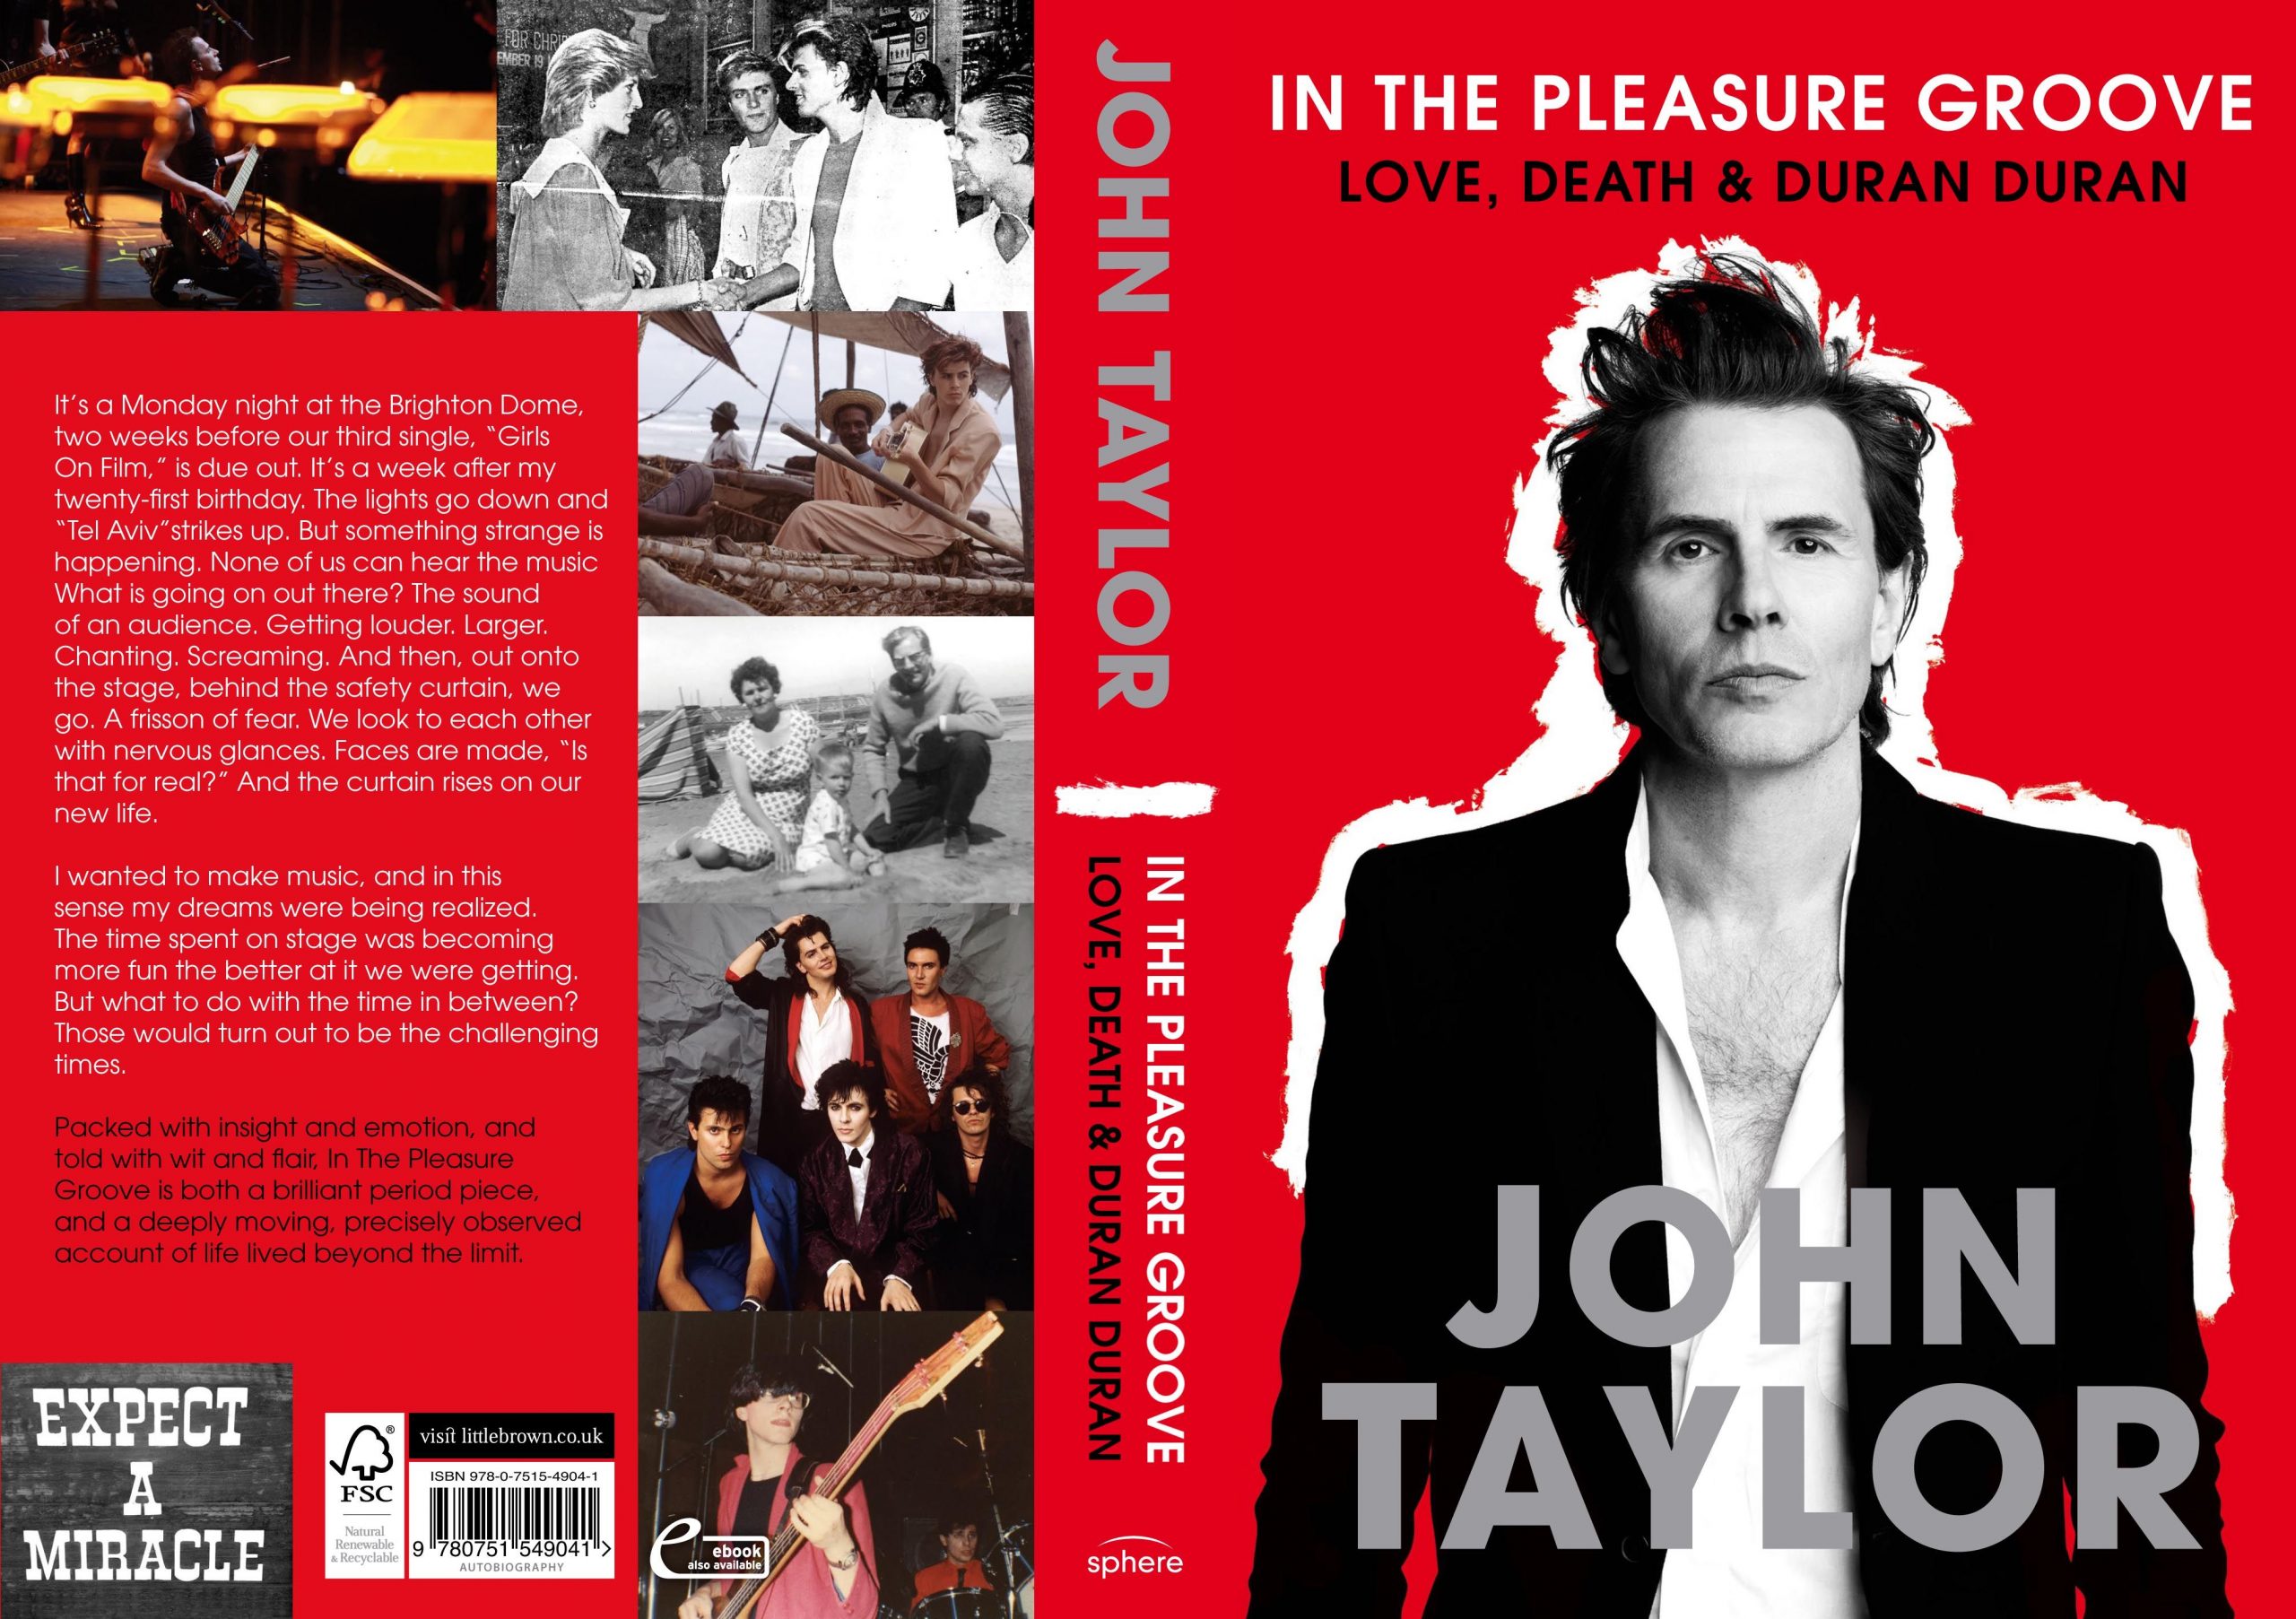 4 John Taylor Quotes About Duran Duran